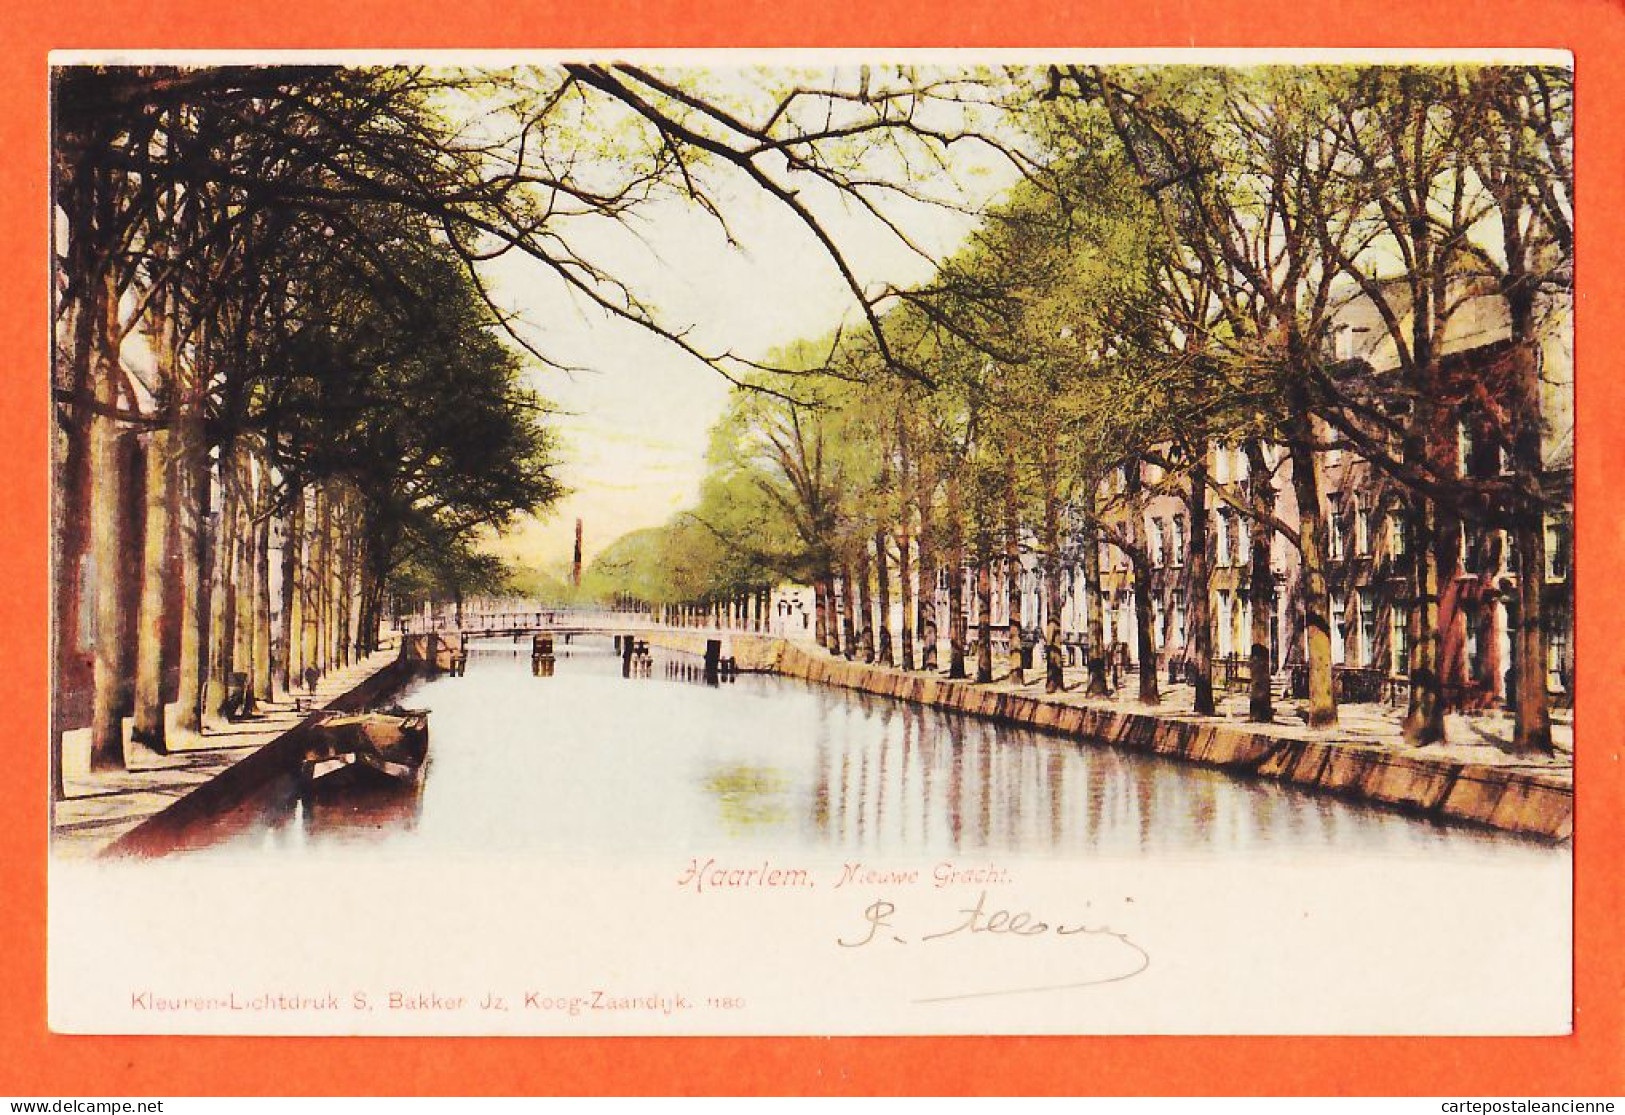 05047 ● HAARLEM Noord-Holland Nieuwe Gracht Canal 1902 à Covela ALBINI Bruxelles Kleuren-Lichtdruk BAKKER Koog-Zaandijk - Haarlem